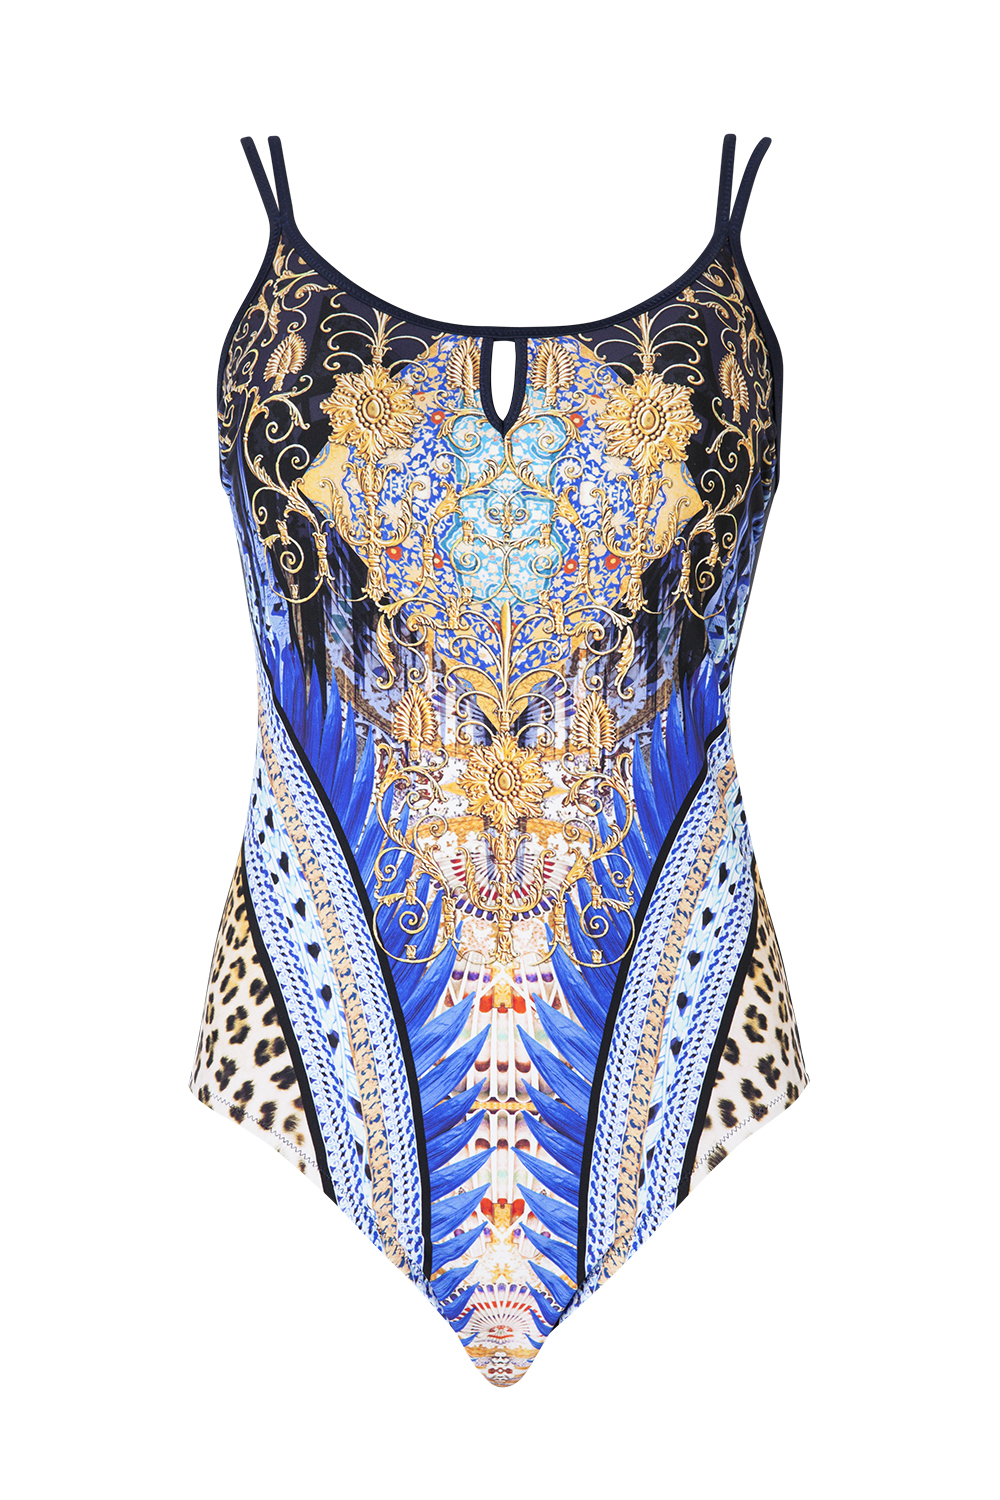 Swimsuit, $159, by Femme de la Mer.